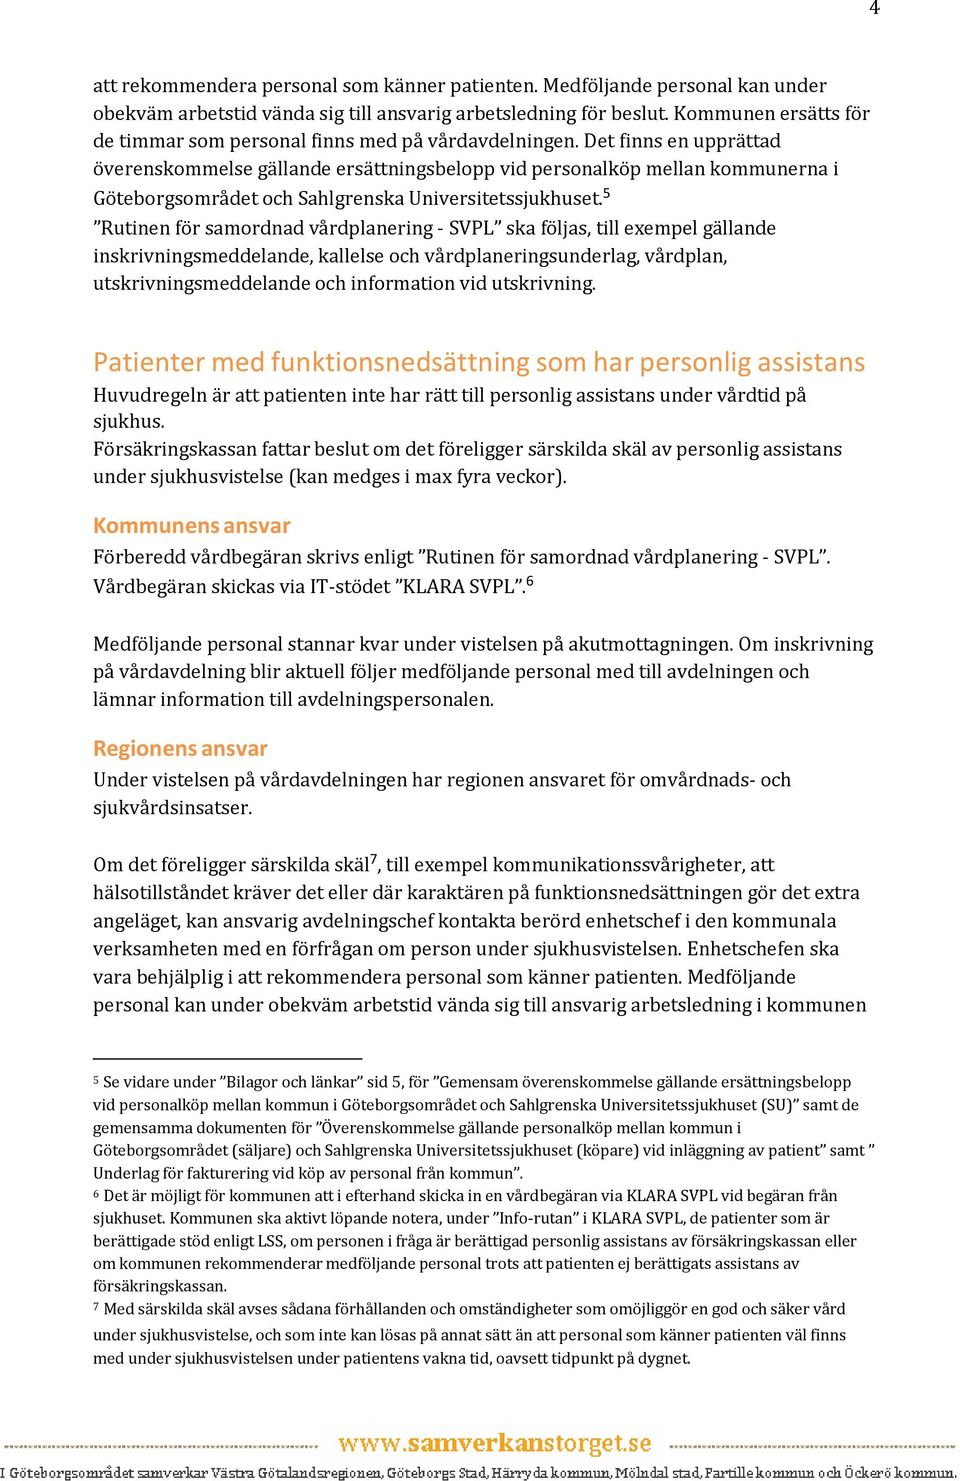 Det finns en upprättad överenskommelse gällande ersättningsbelopp vid personalköp mellan kommunerna i Göteborgsområdet och Sahlgrenska Universitetssjukhuset.